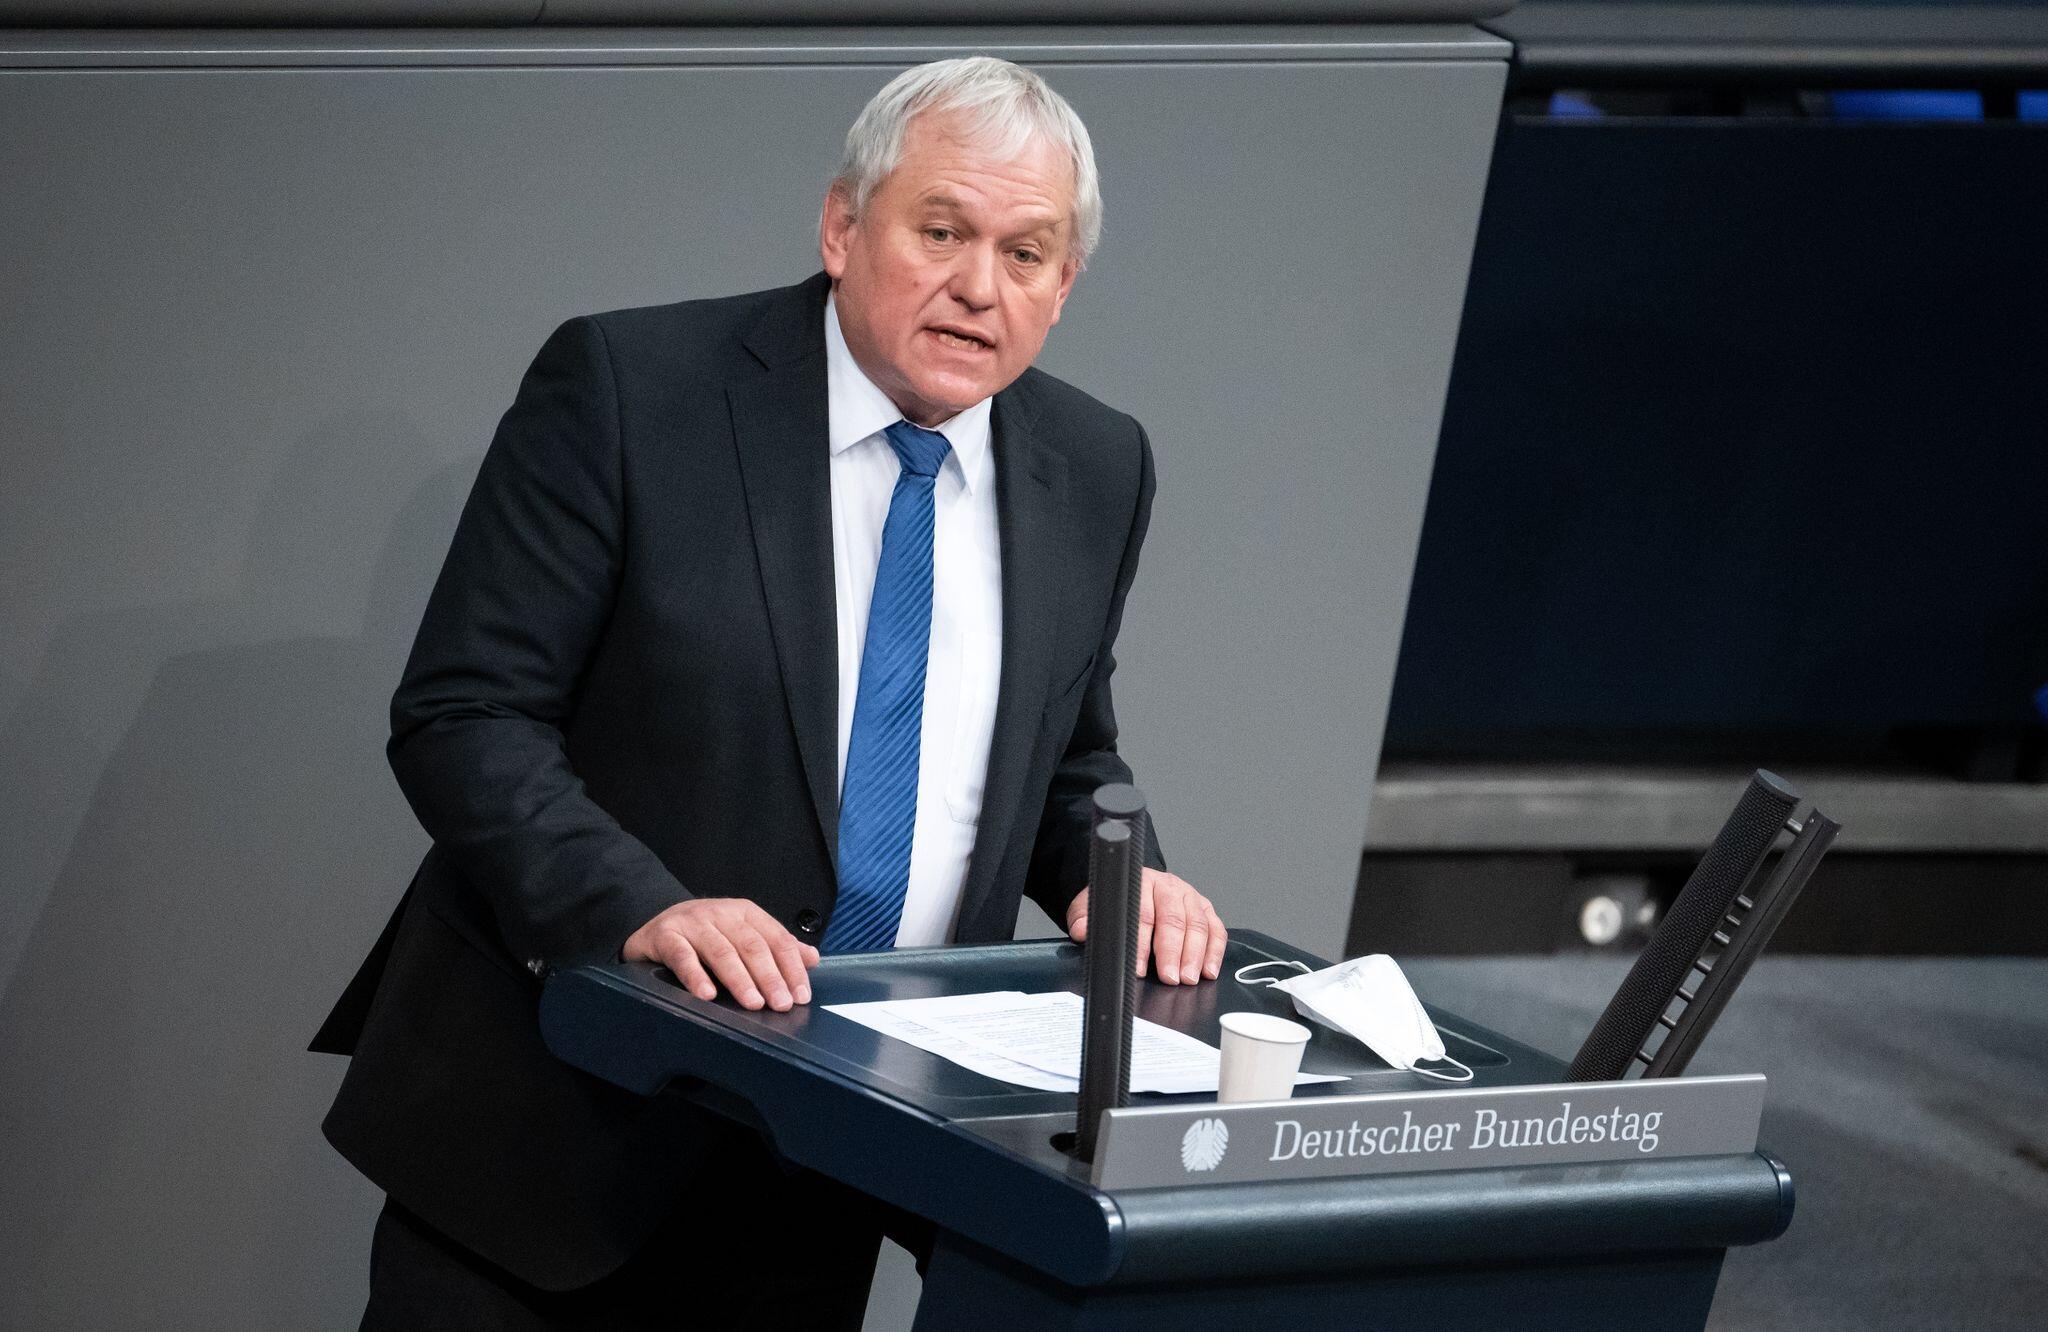 Deputeti gjerman i bën thirrje BE-së për vënie sanksionesh ndaj Radoiçiqit